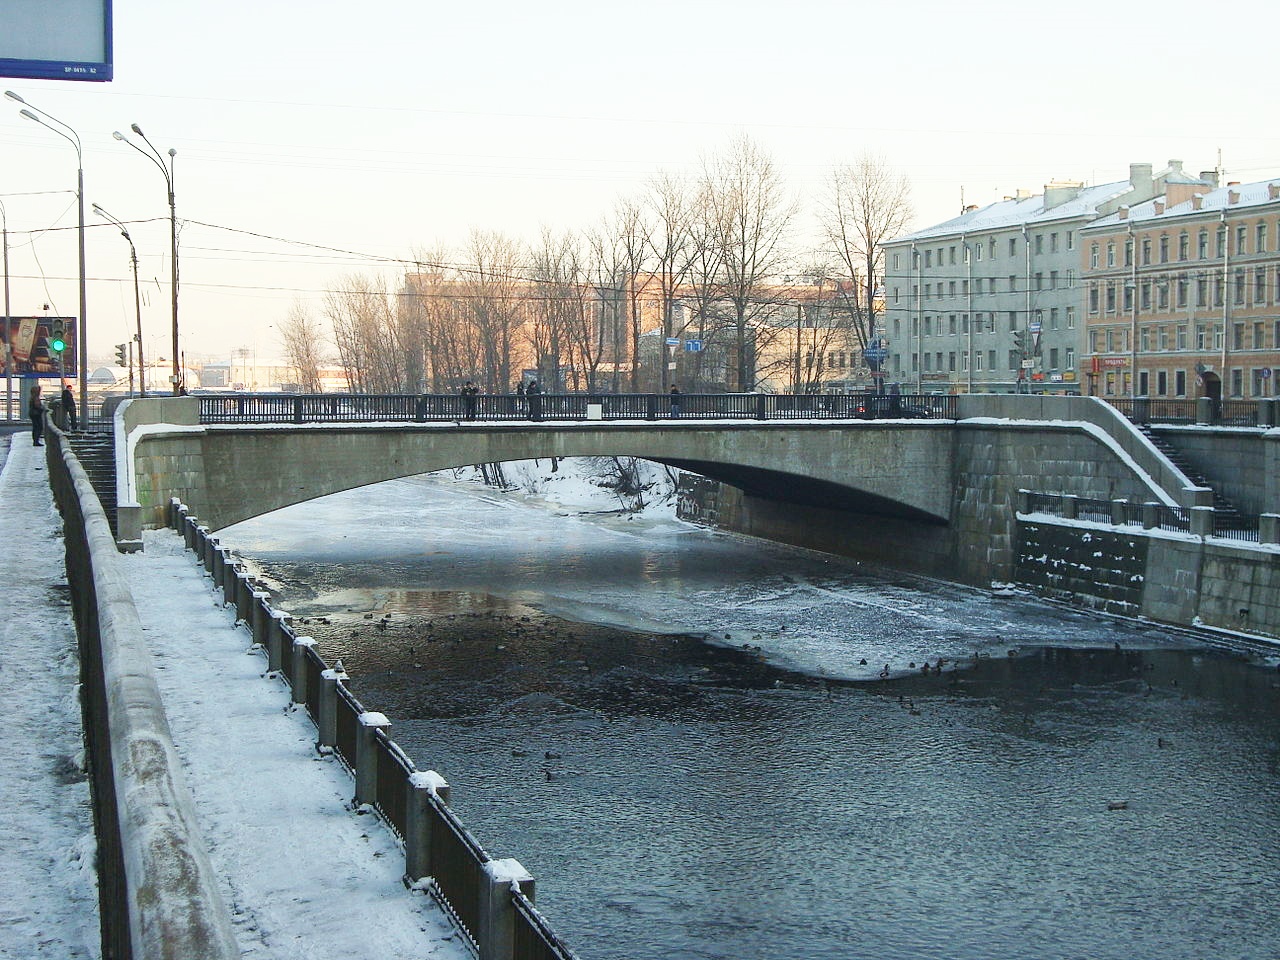 1predtechenskij most